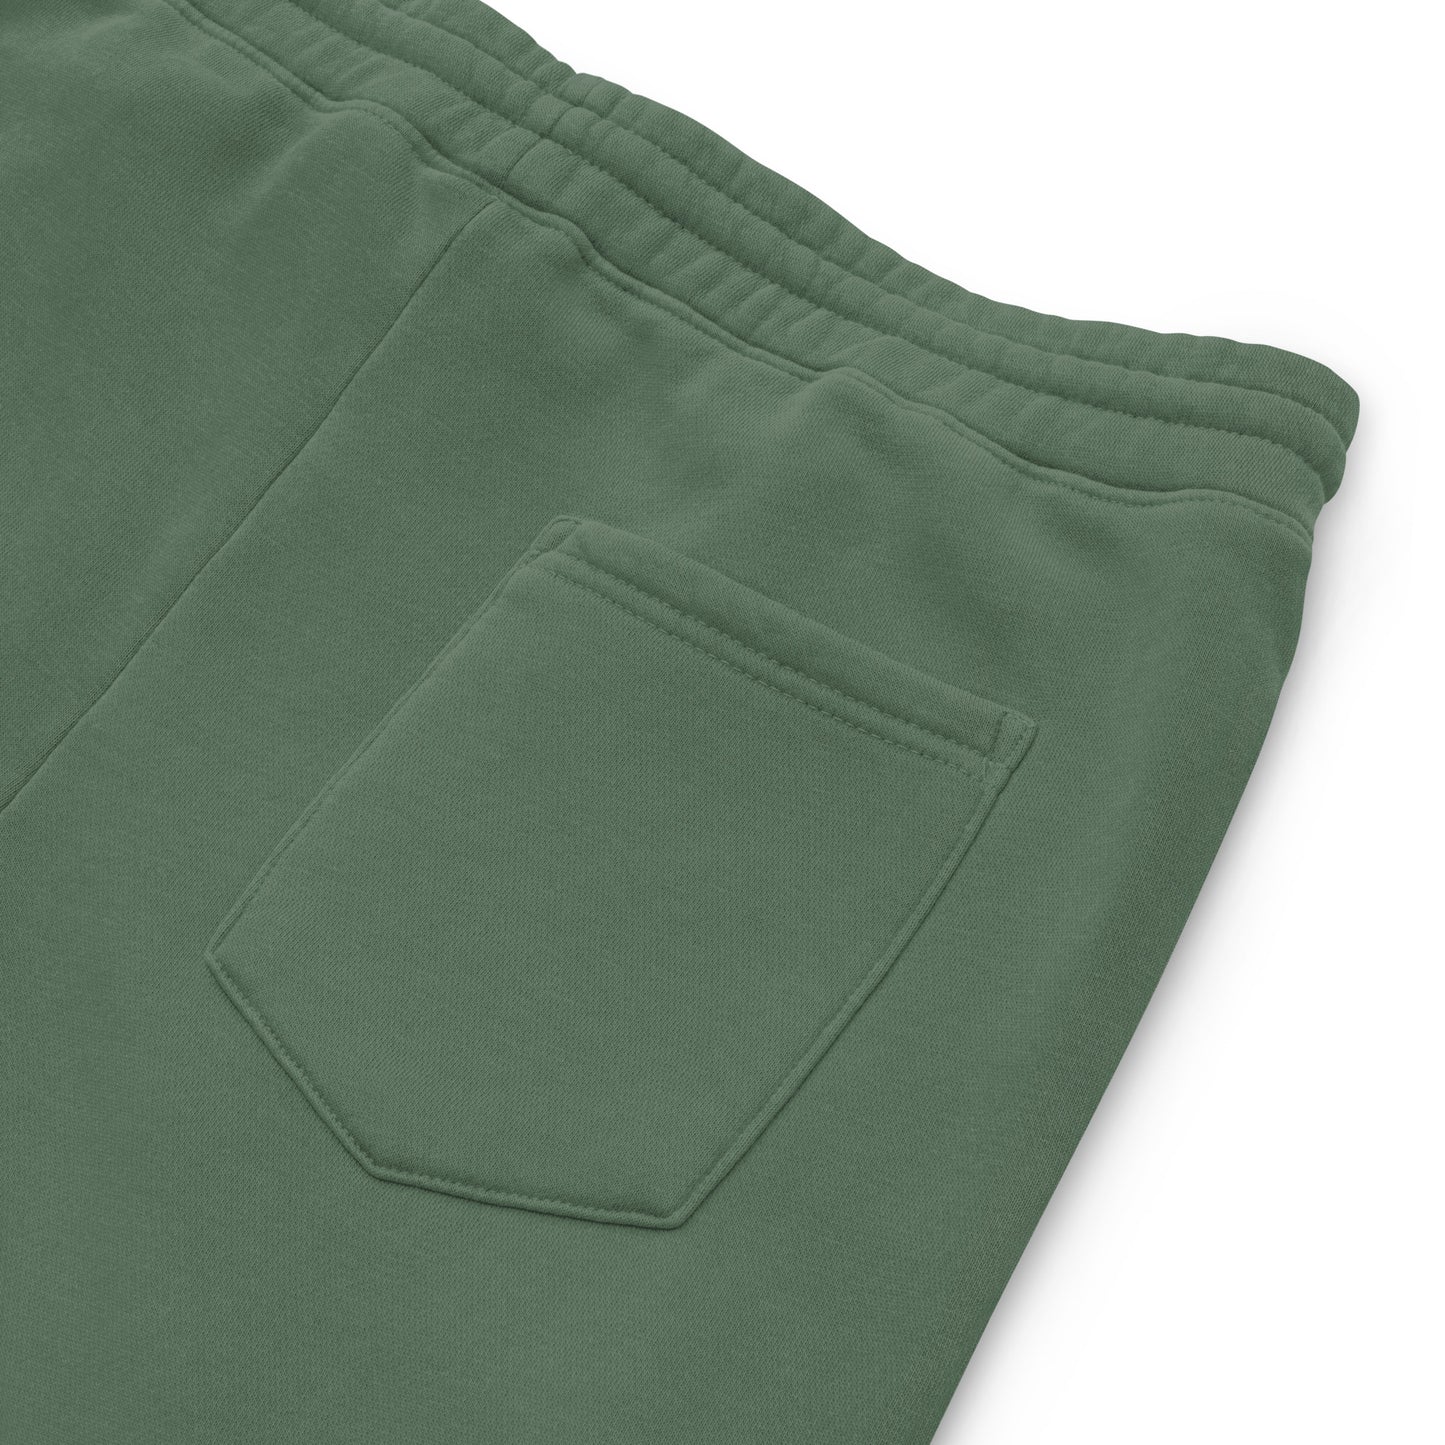 212 Ivy League - Unisex pigment-dyed sweatpants